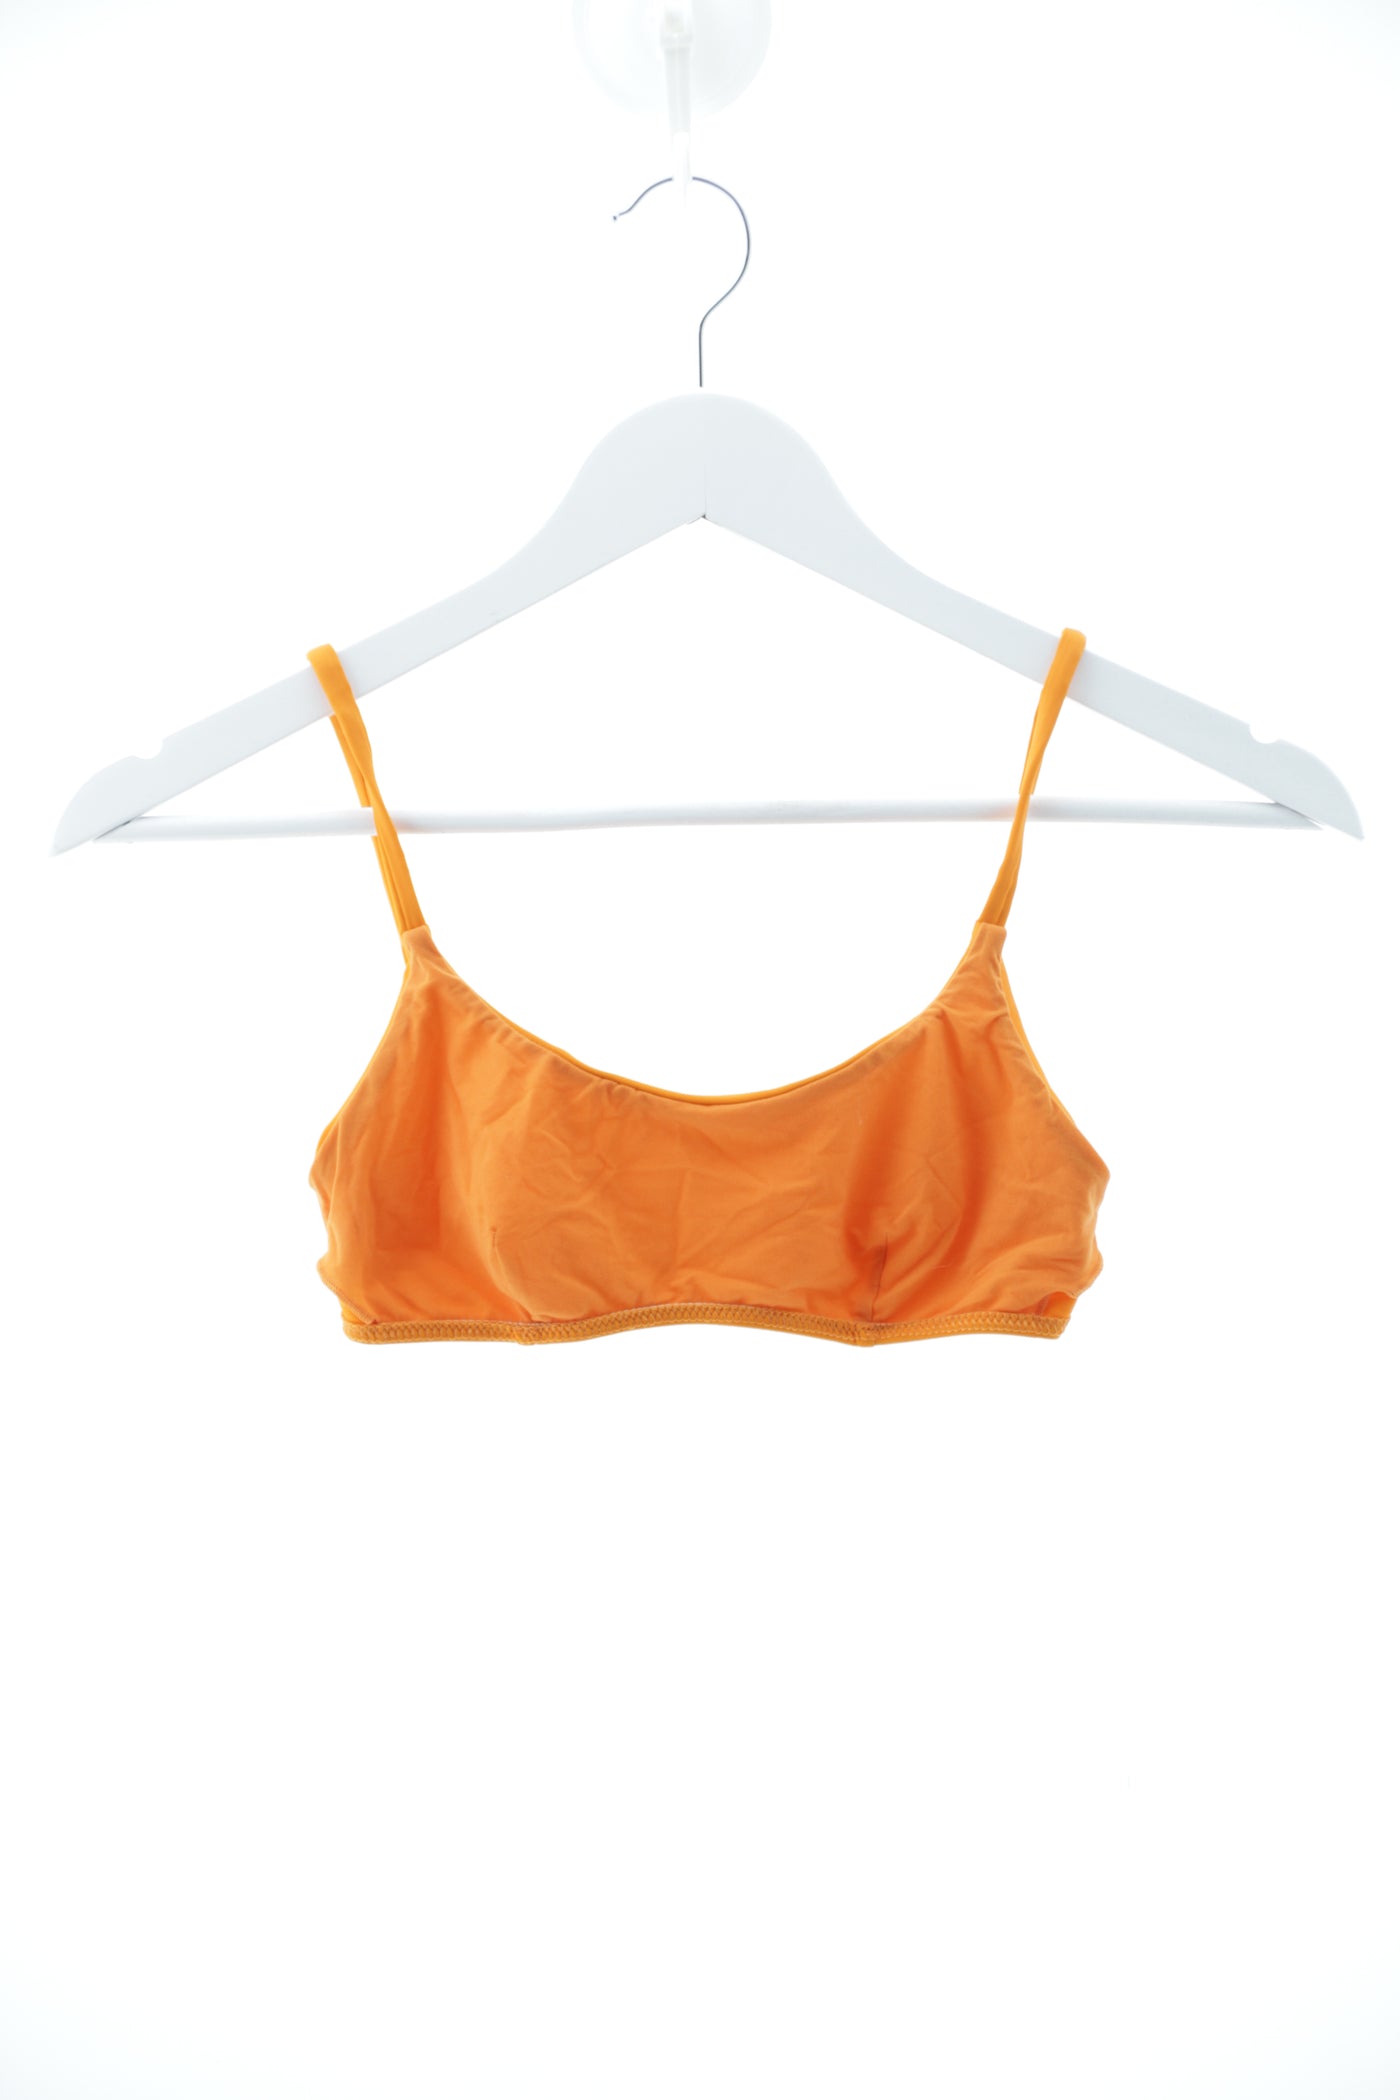 Bikini naranja básico Diblu